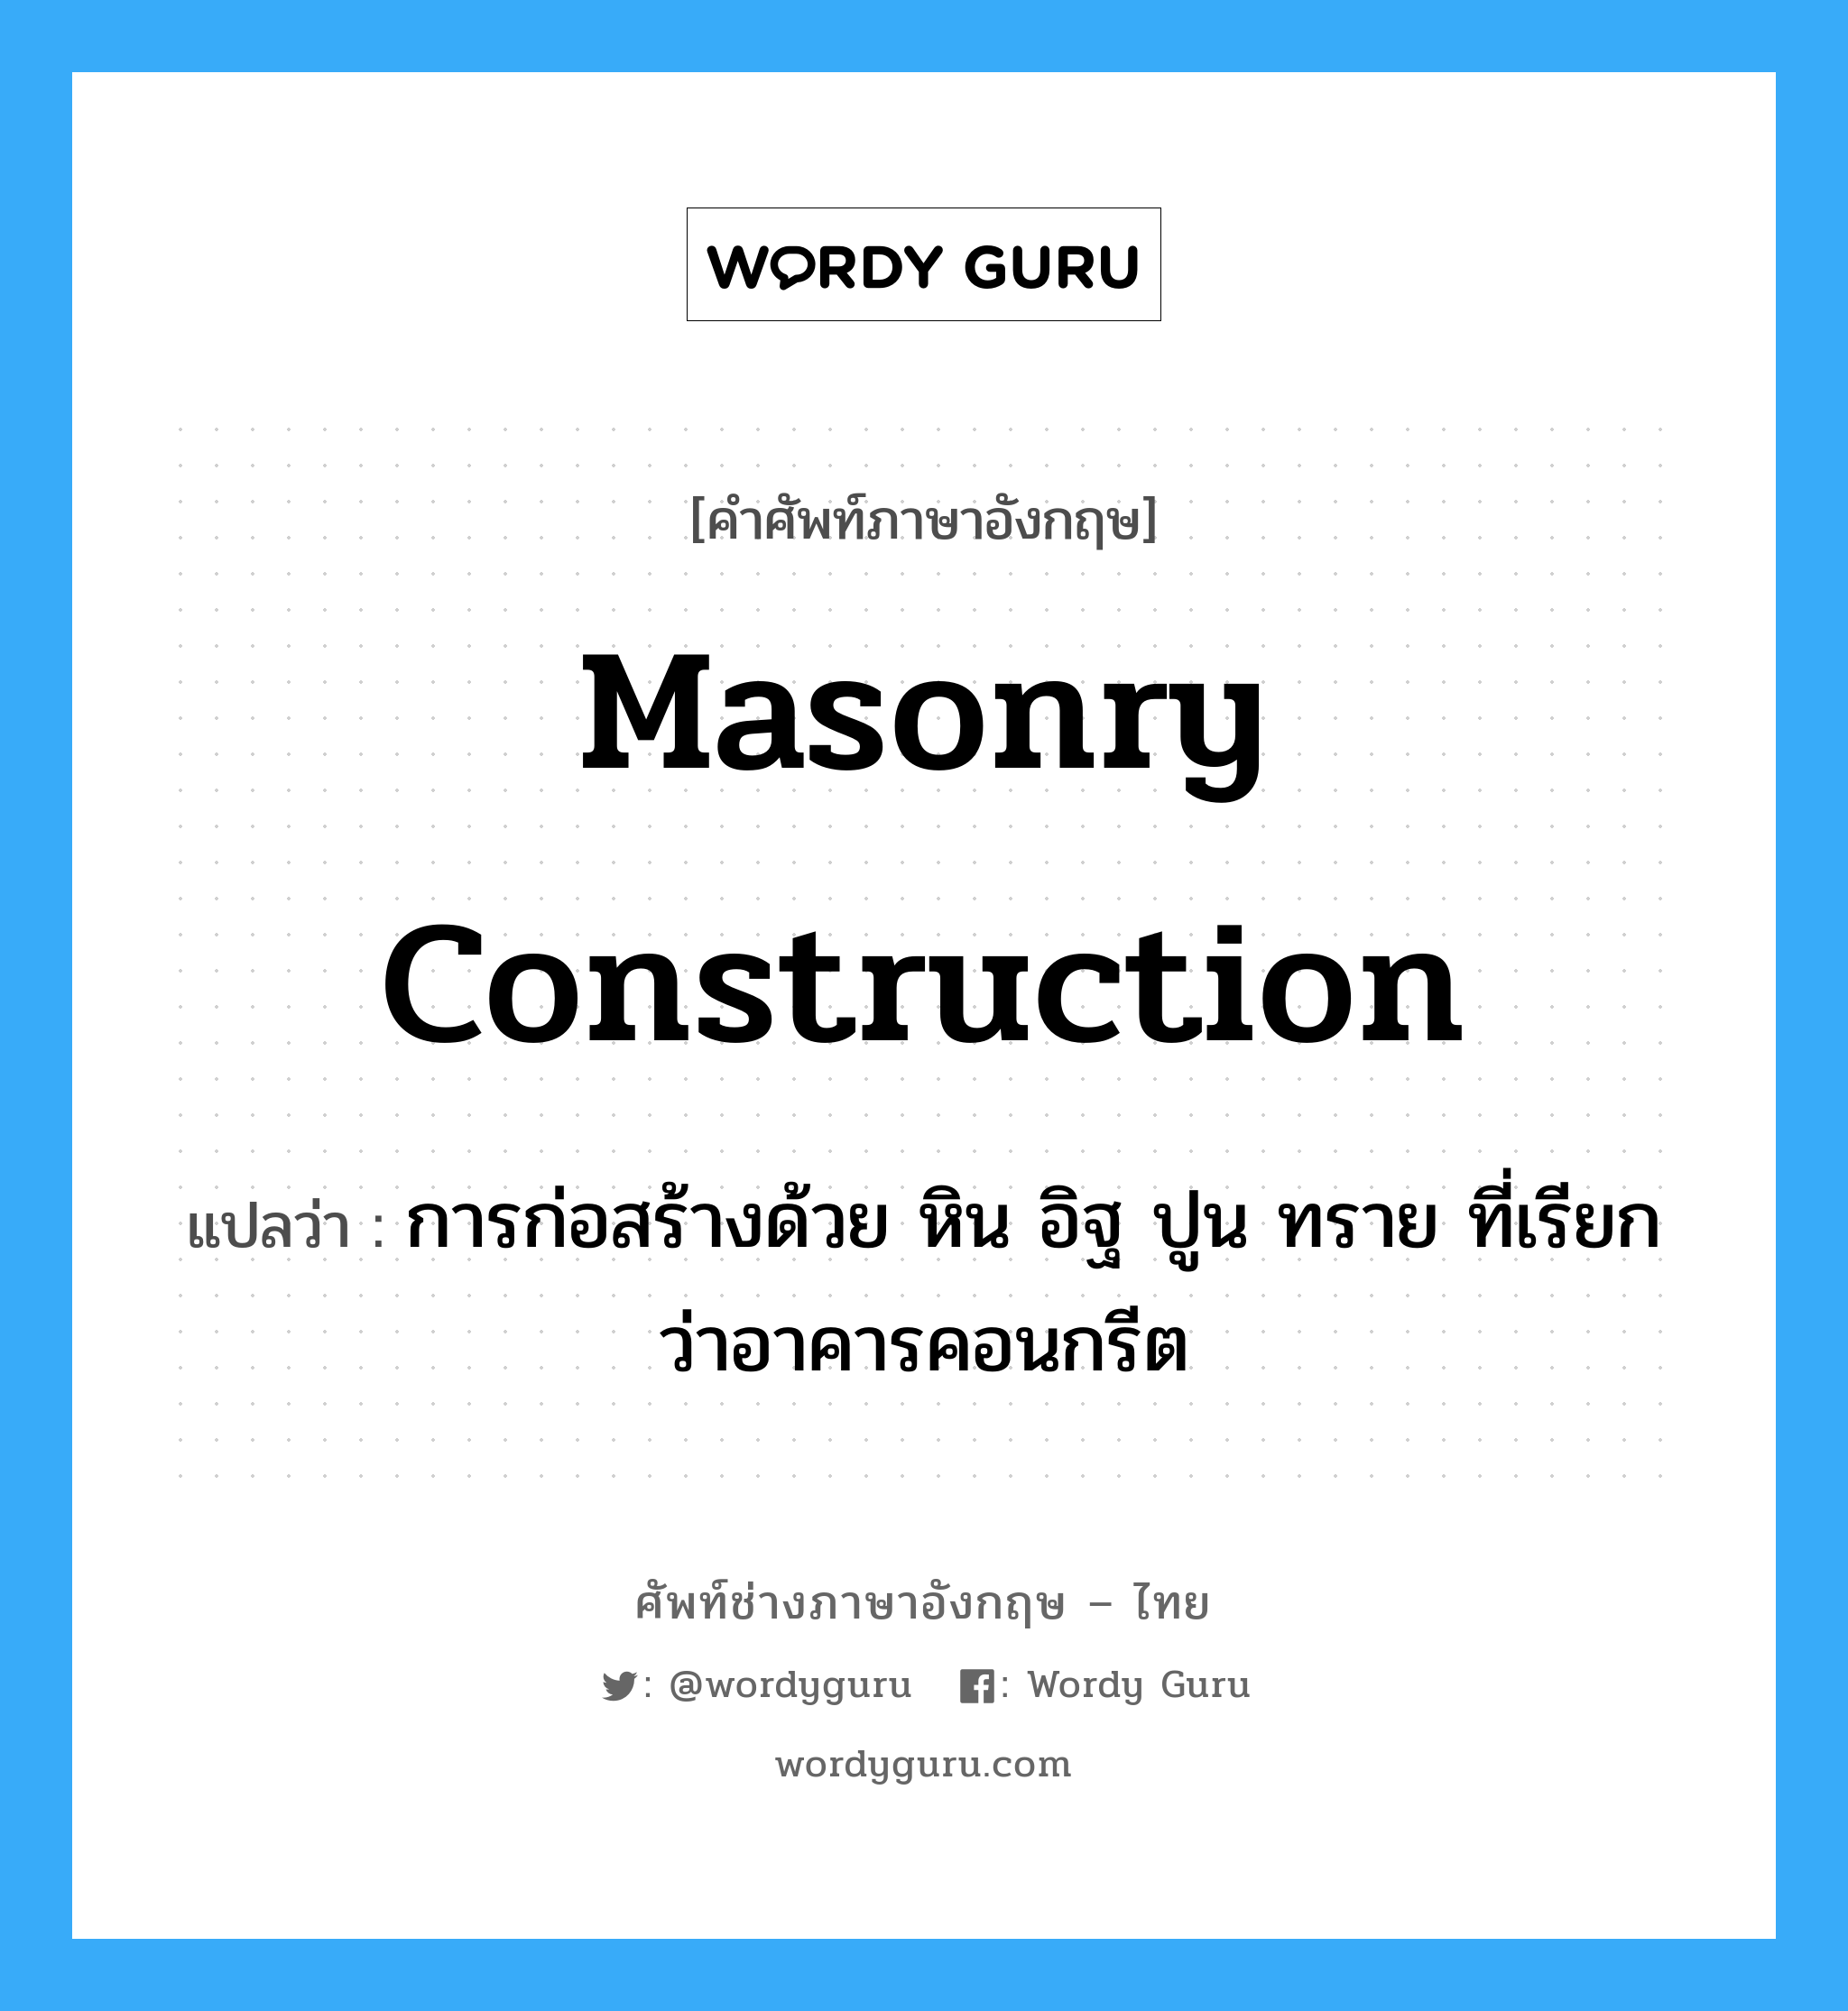 masonry construction แปลว่า?, คำศัพท์ช่างภาษาอังกฤษ - ไทย masonry construction คำศัพท์ภาษาอังกฤษ masonry construction แปลว่า การก่อสร้างด้วย หิน อิฐ ปูน ทราย ที่เรียกว่าอาคารคอนกรีต